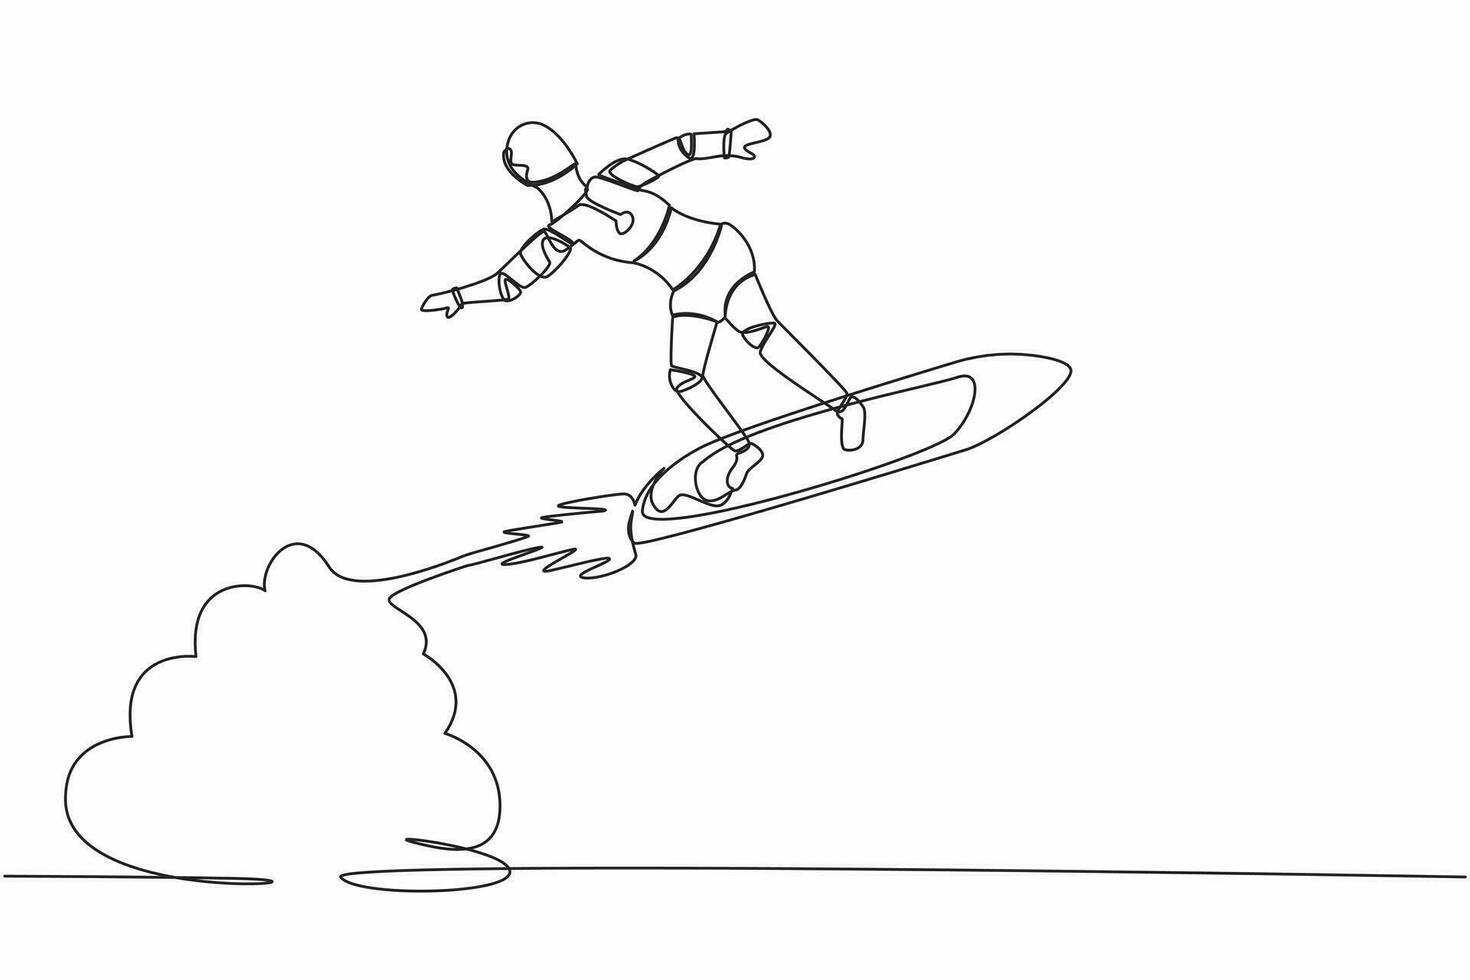 soltero continuo línea dibujo robot montando surf tablero cohete volador en el cielo. futuro tecnología desarrollo. artificial inteligencia máquina aprendiendo. uno línea gráfico diseño vector ilustración